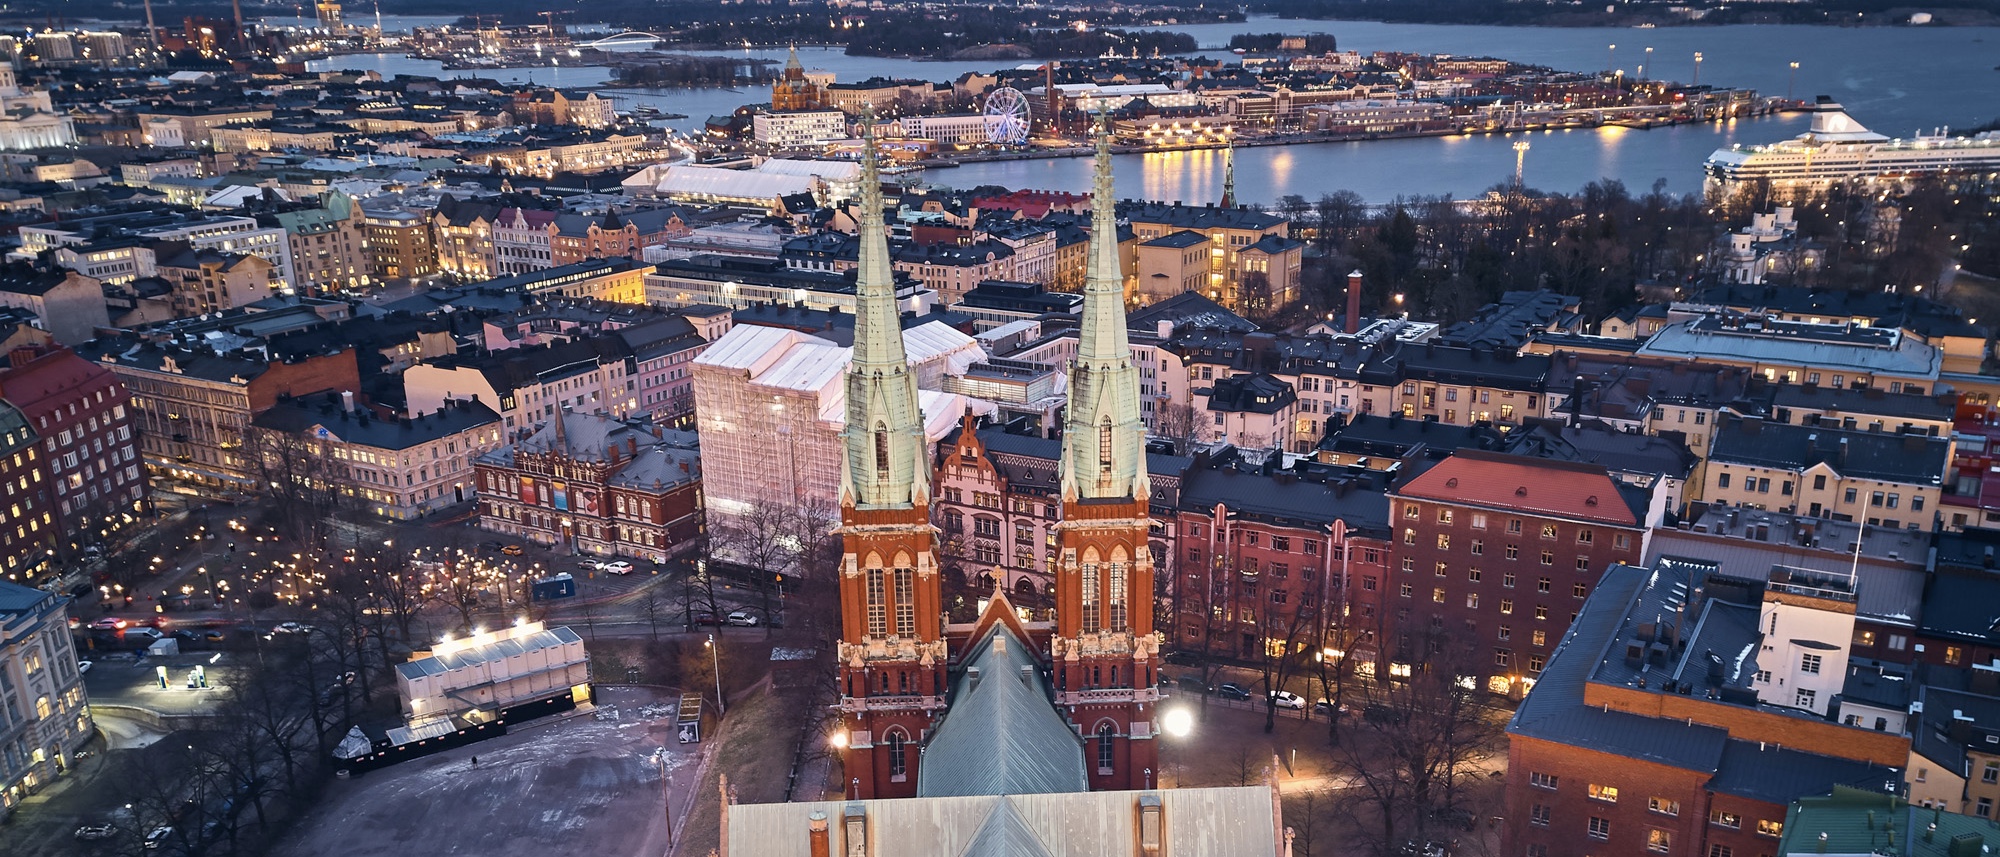 Dronefoto på Johanneskyrkan uppifrån där man ser Skatudden i bakgrunden. Tagen av Karavanov Lev.